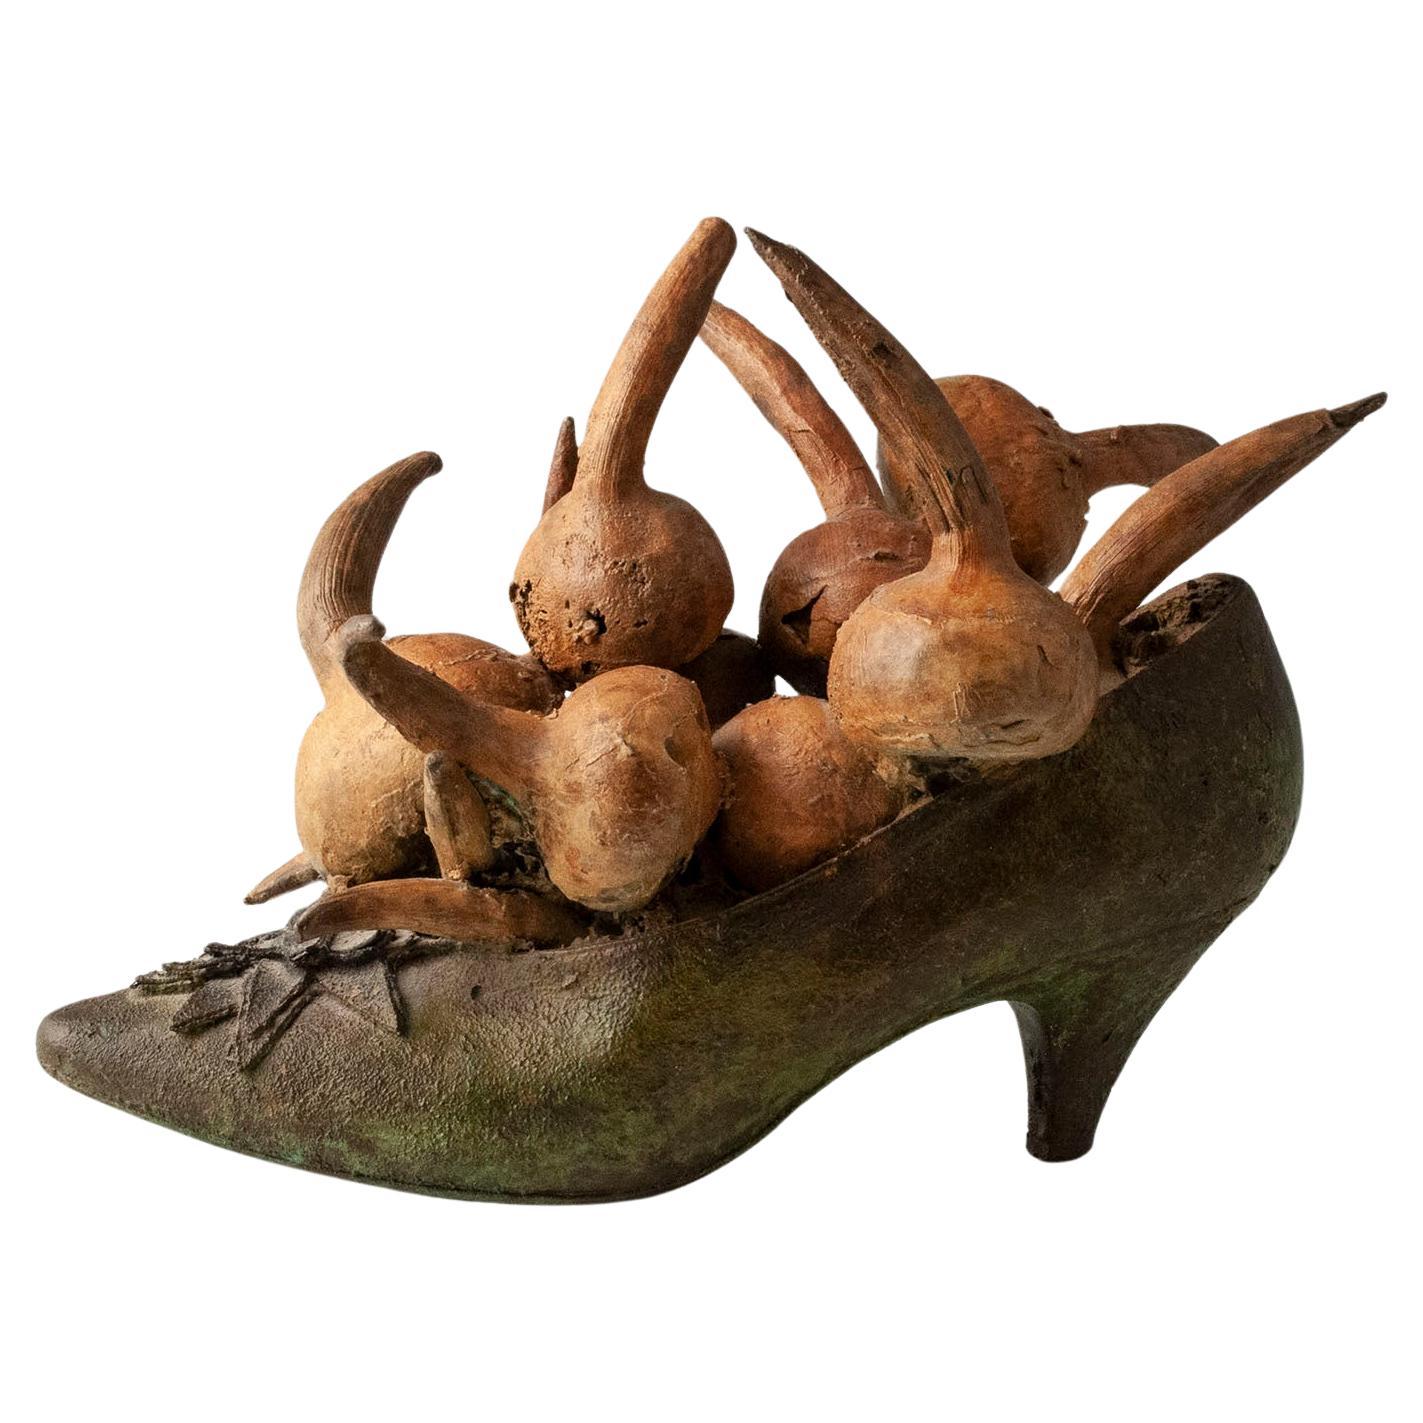 Steve Tobin Cast Bronze Shoe Sculpture with Onions, 1980s